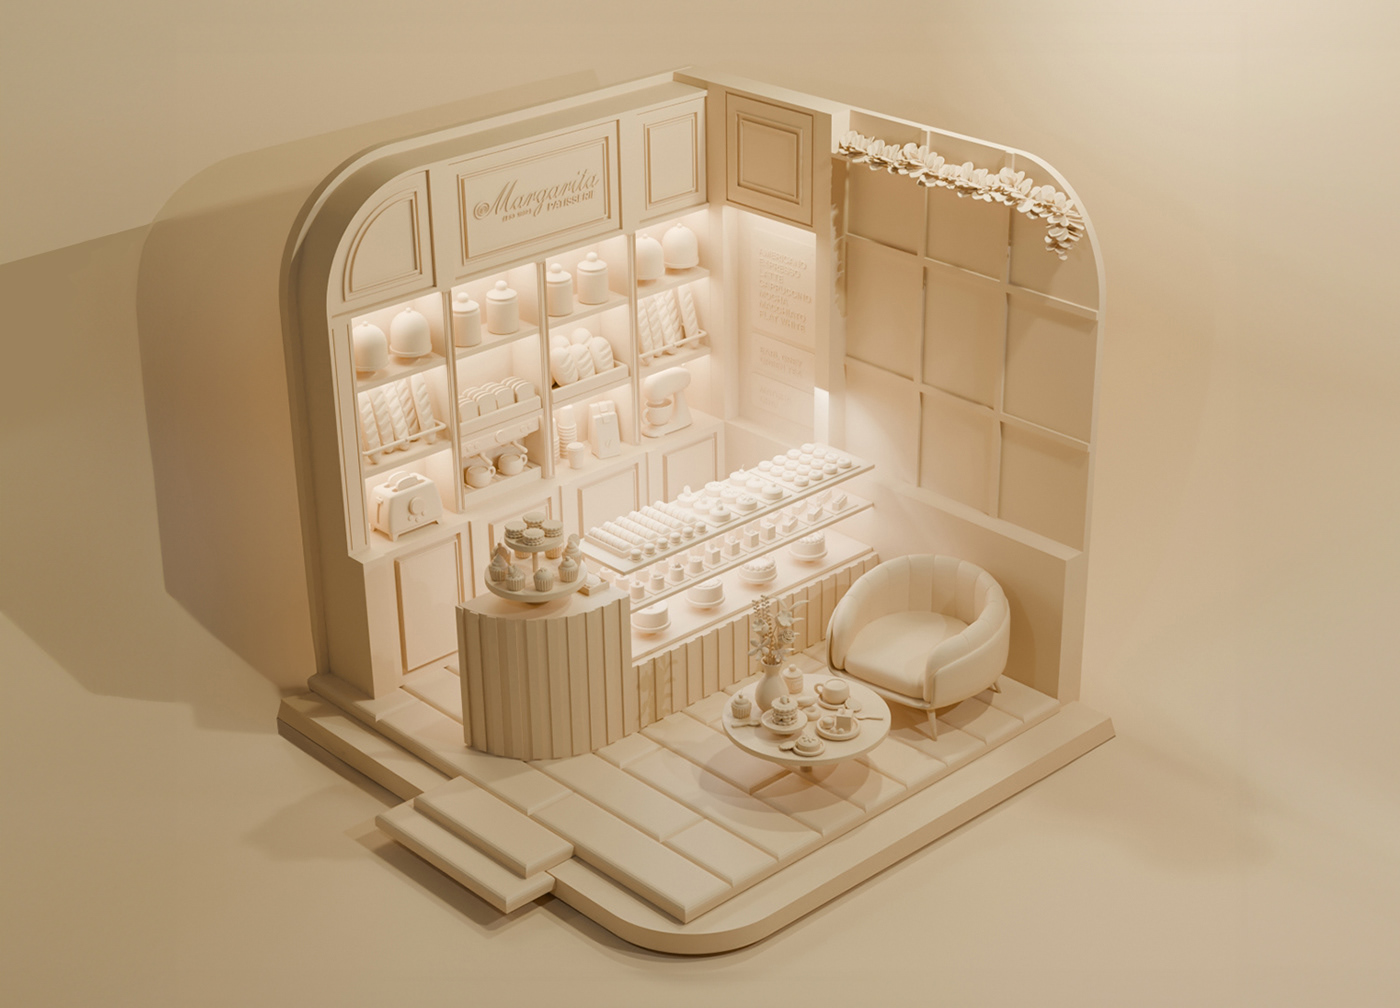 3D blender Isometric bakery design concept art Digital Art  3d modeling interior design  architecture